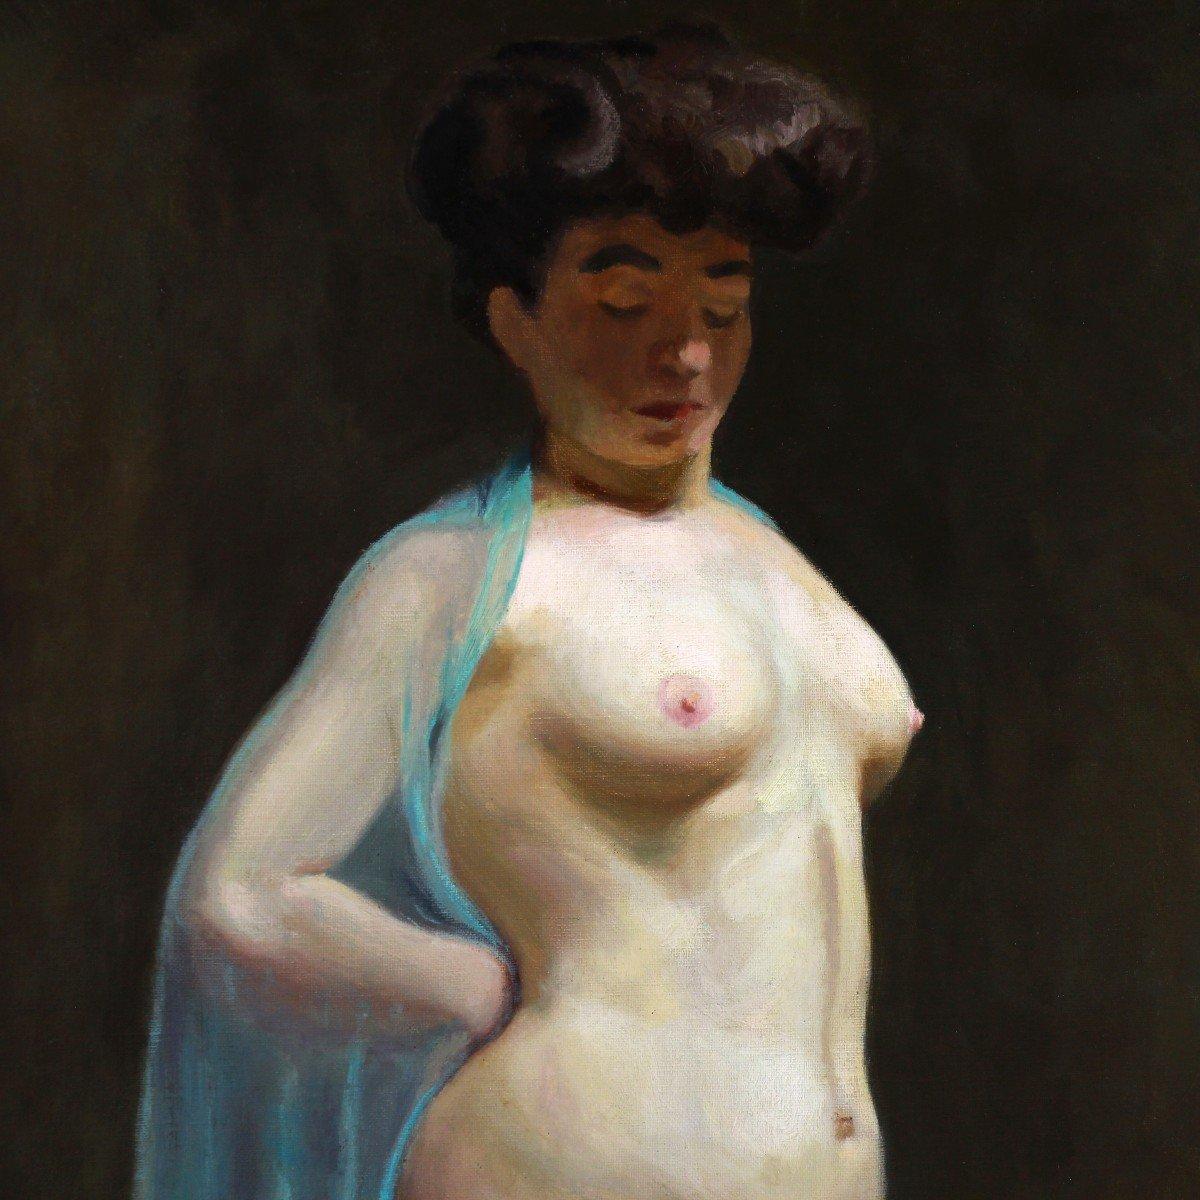 Studie Akt Öl auf Leinwand „Frau mit blauem Schleier“ Französische Schule 19. Jahrhundert  (Gold), Nude Painting, von Emile Auguste Carolus-duran (1837-1917 )